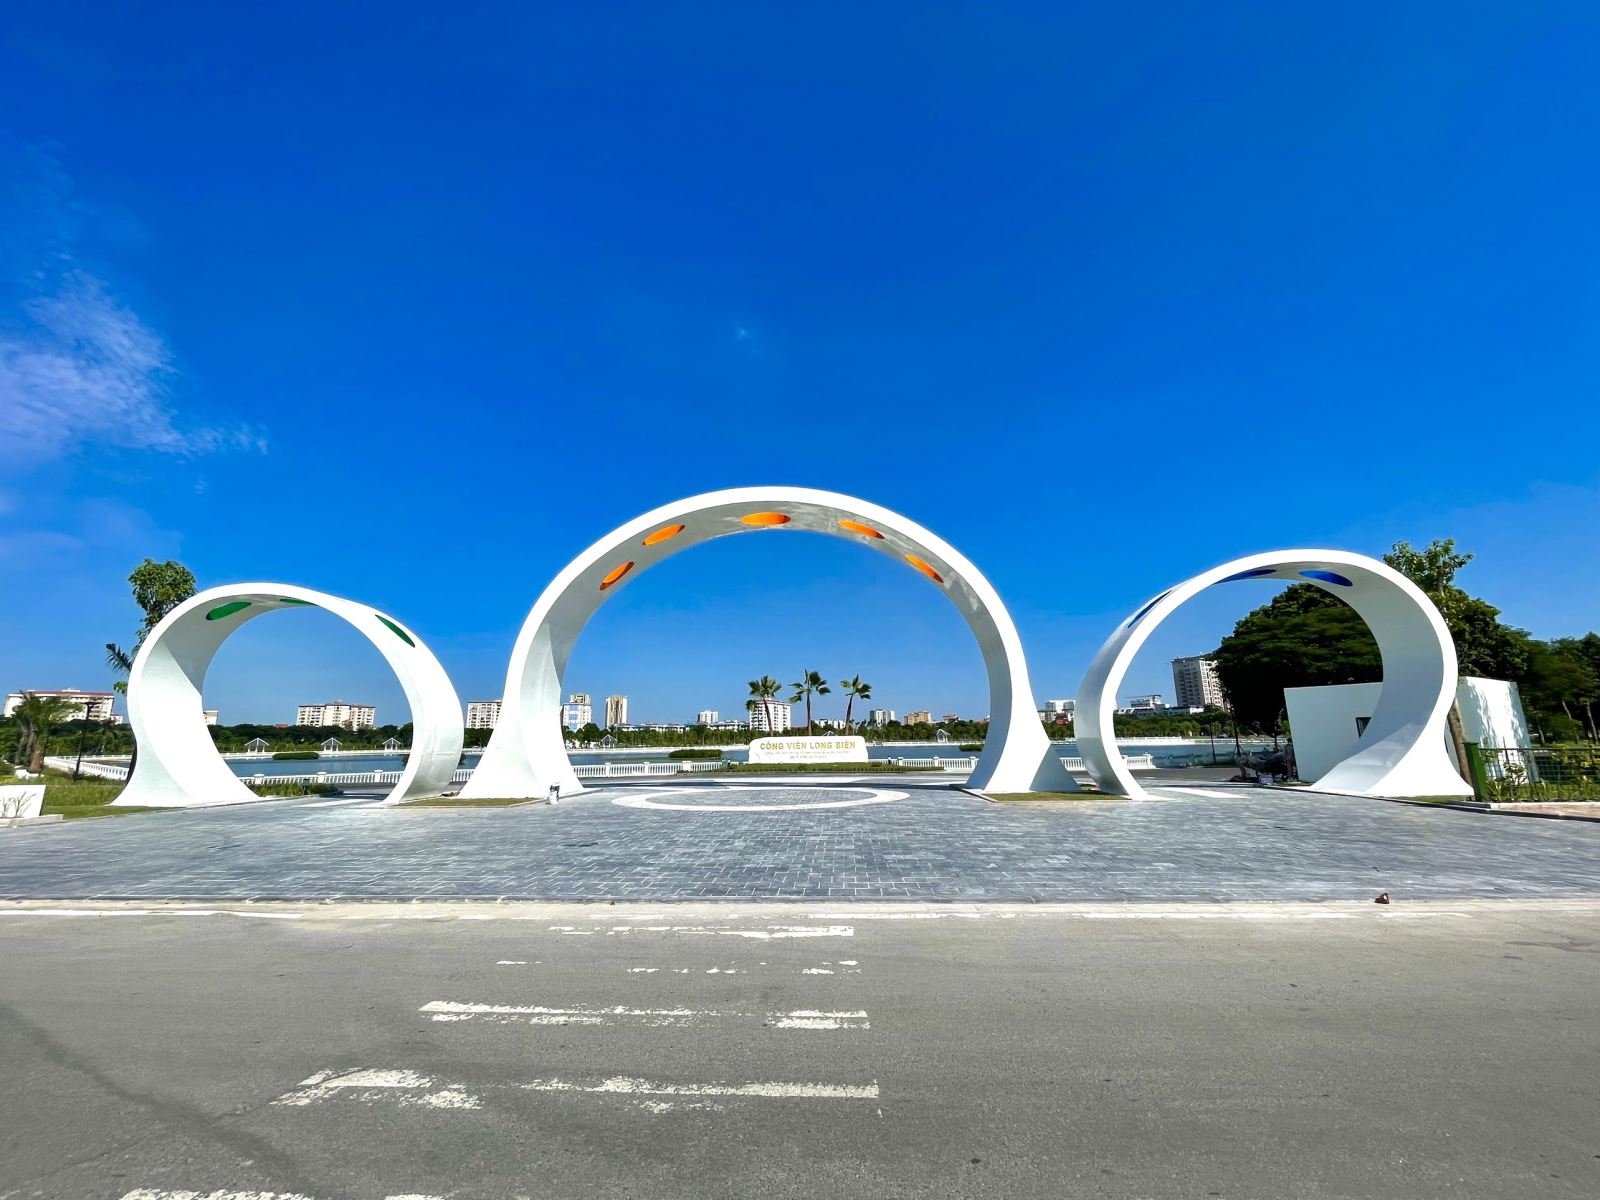 Công viên Long Biên sắp hoàn thành chào mừng 20 năm thành lập quận Long Biên